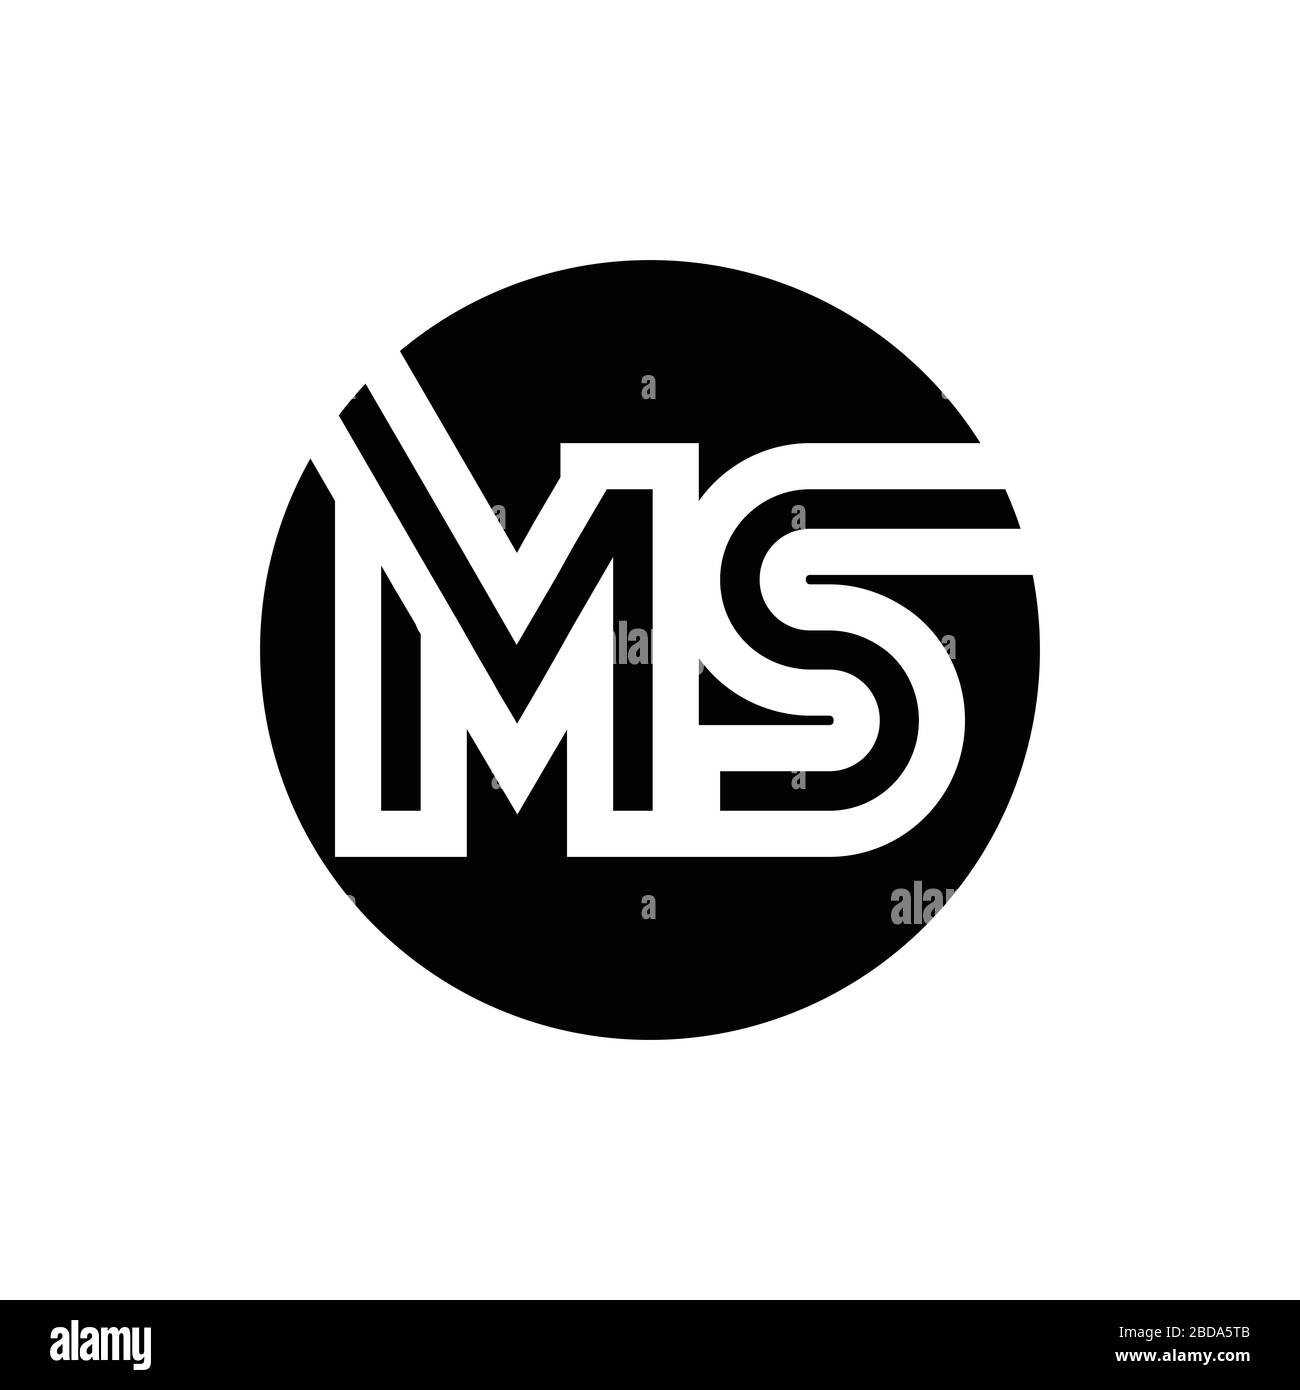 11 Logo M&S ideas  s logo design, logo design, lettering